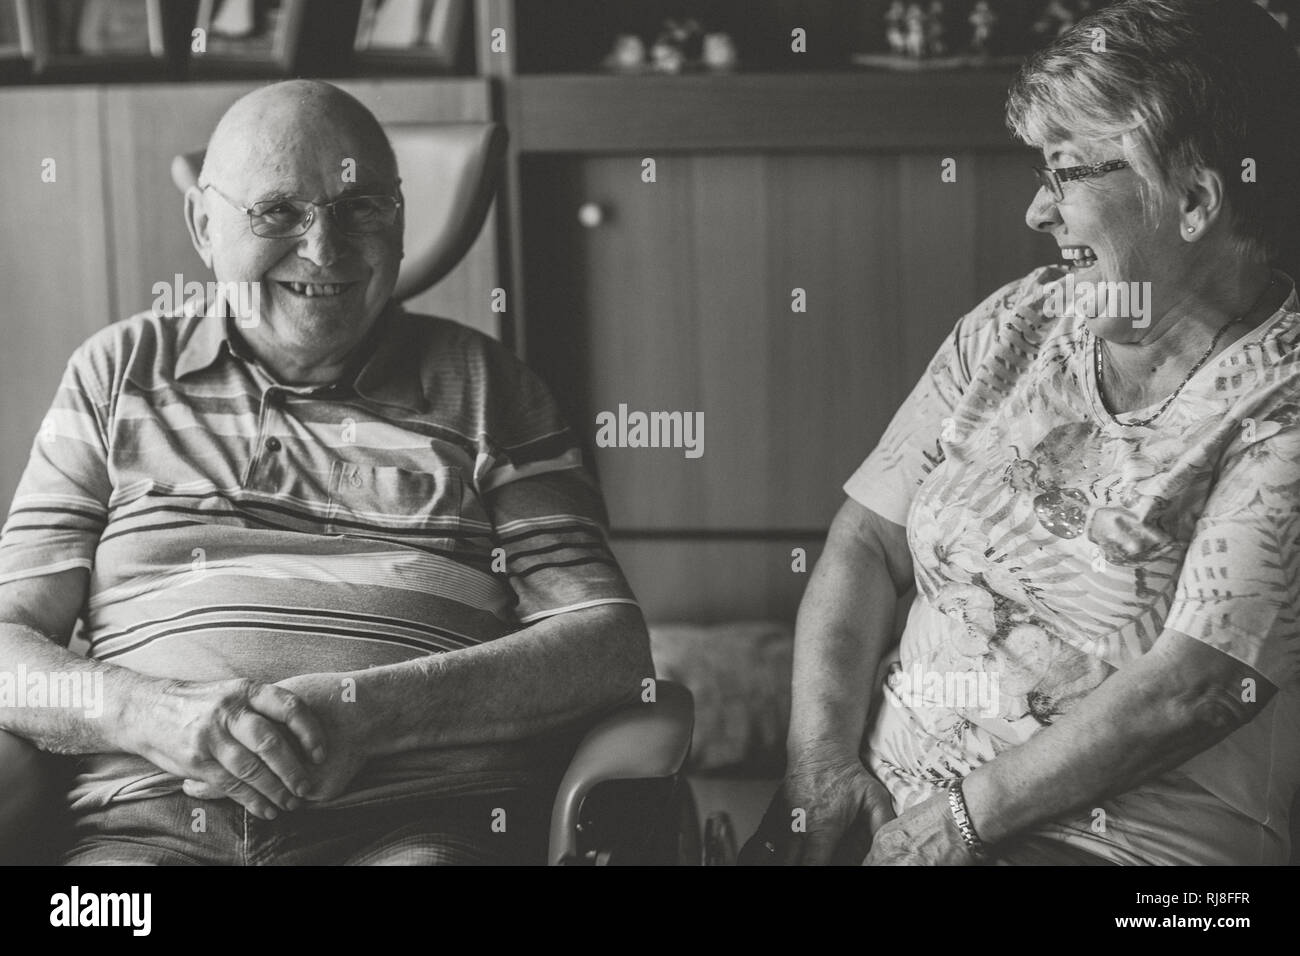 Glückliches Seniorenpaar Zuhause, Mann im Rollstuhl, s/w Stock Photo